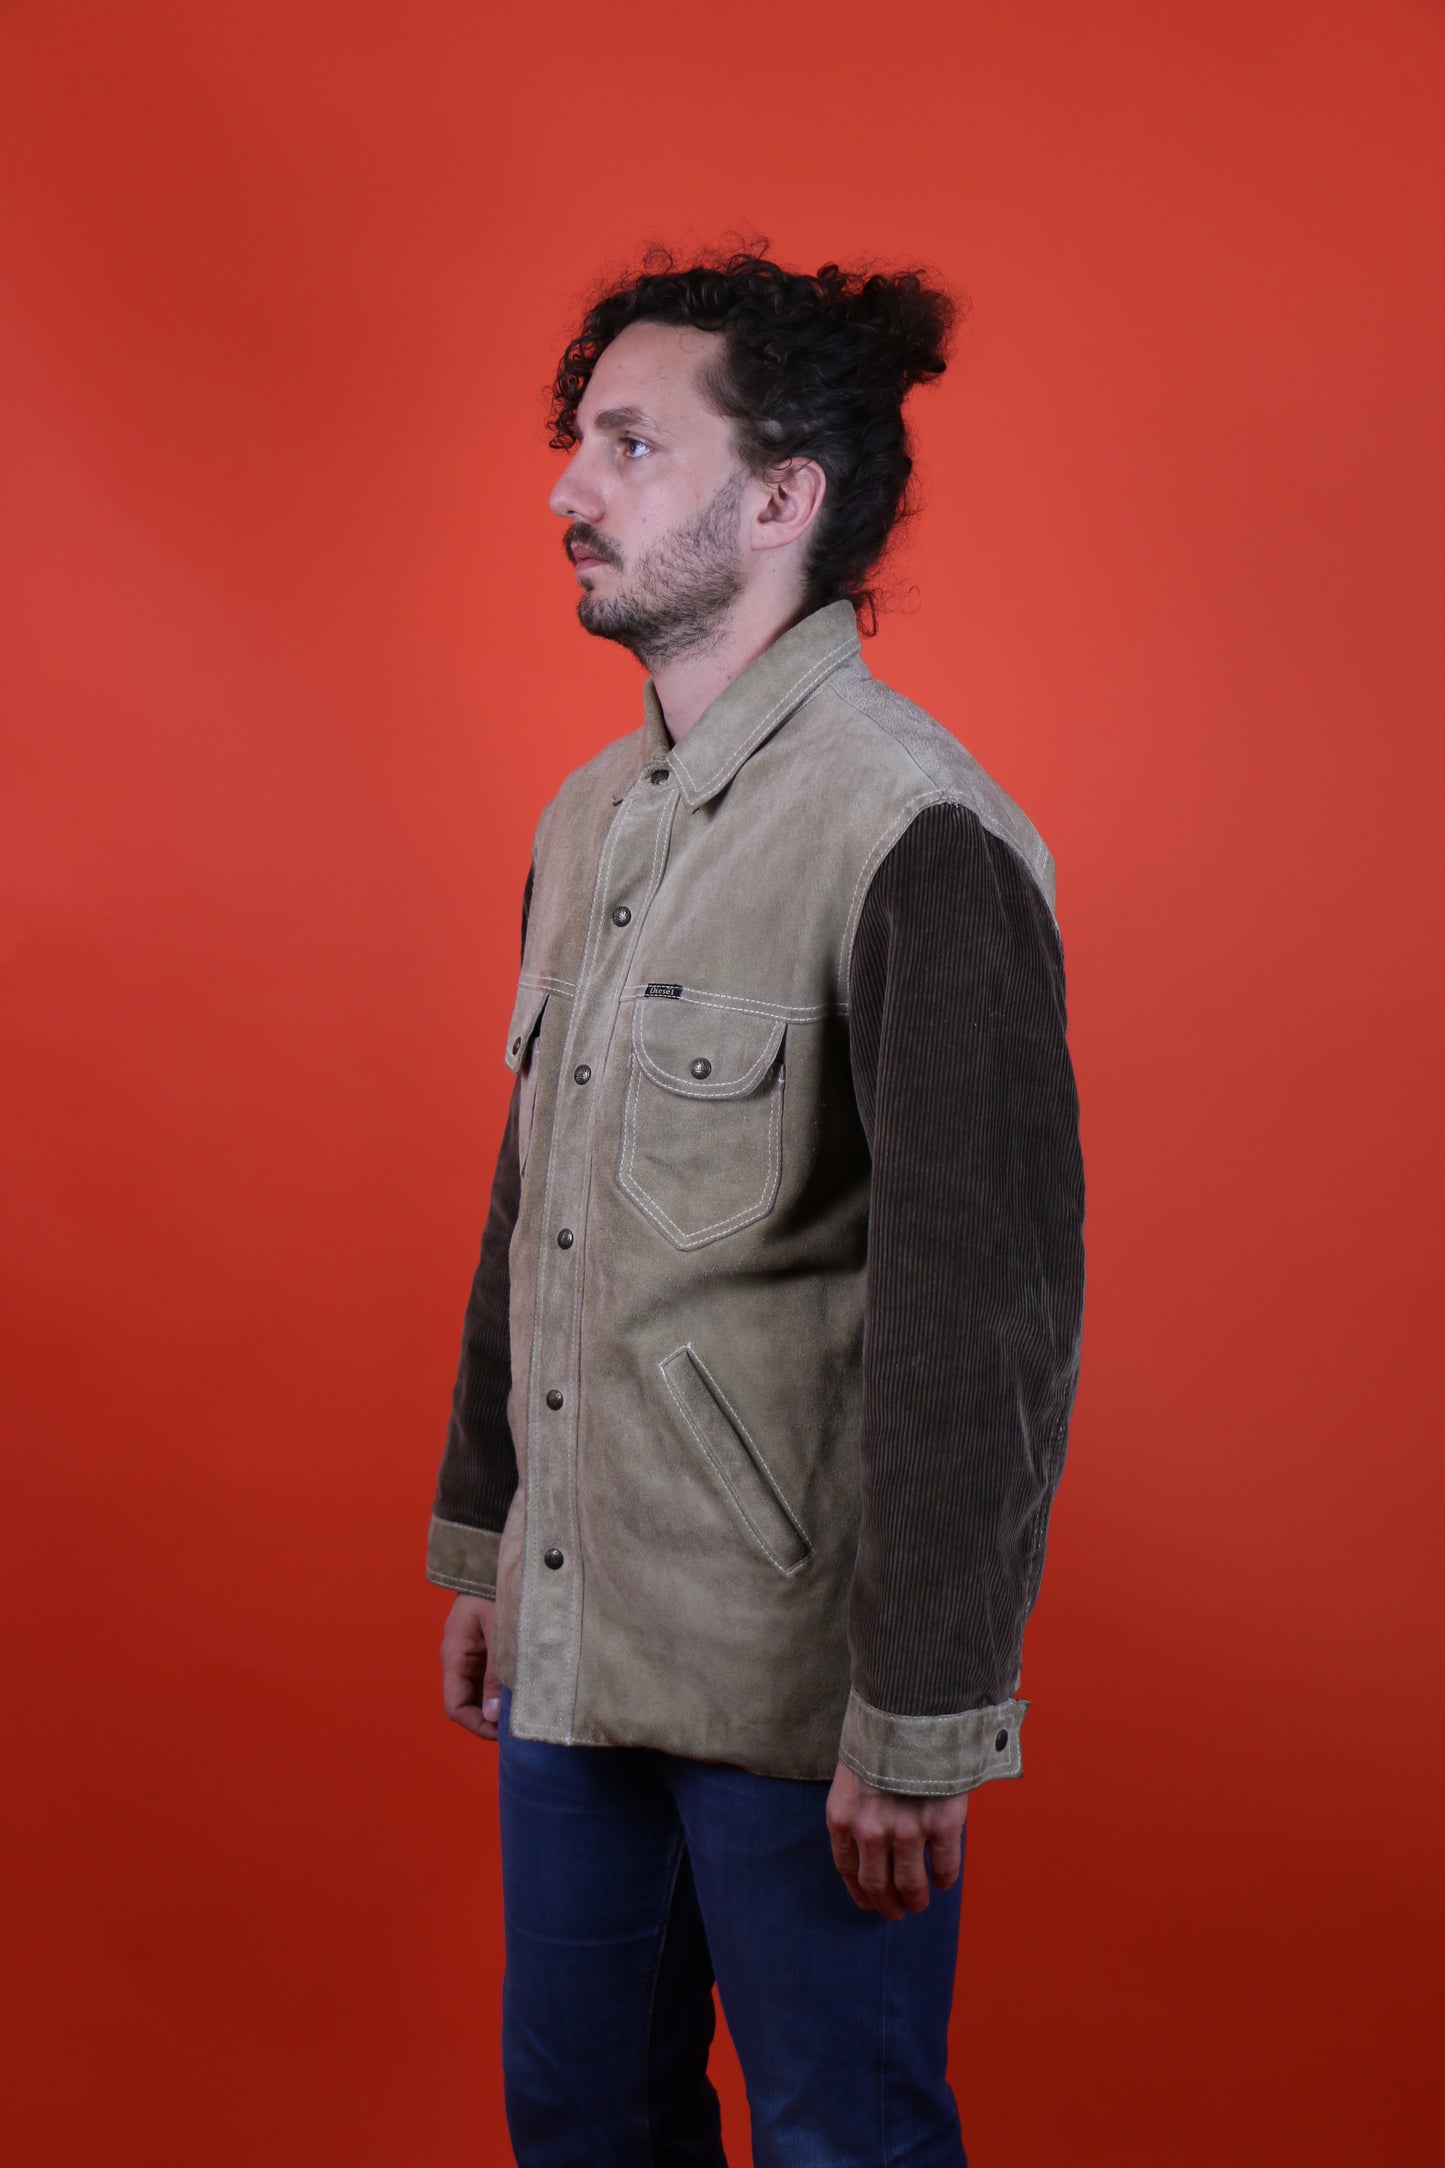 Diesel Leather jacket w/ corduroy sleeves, clochard92.com